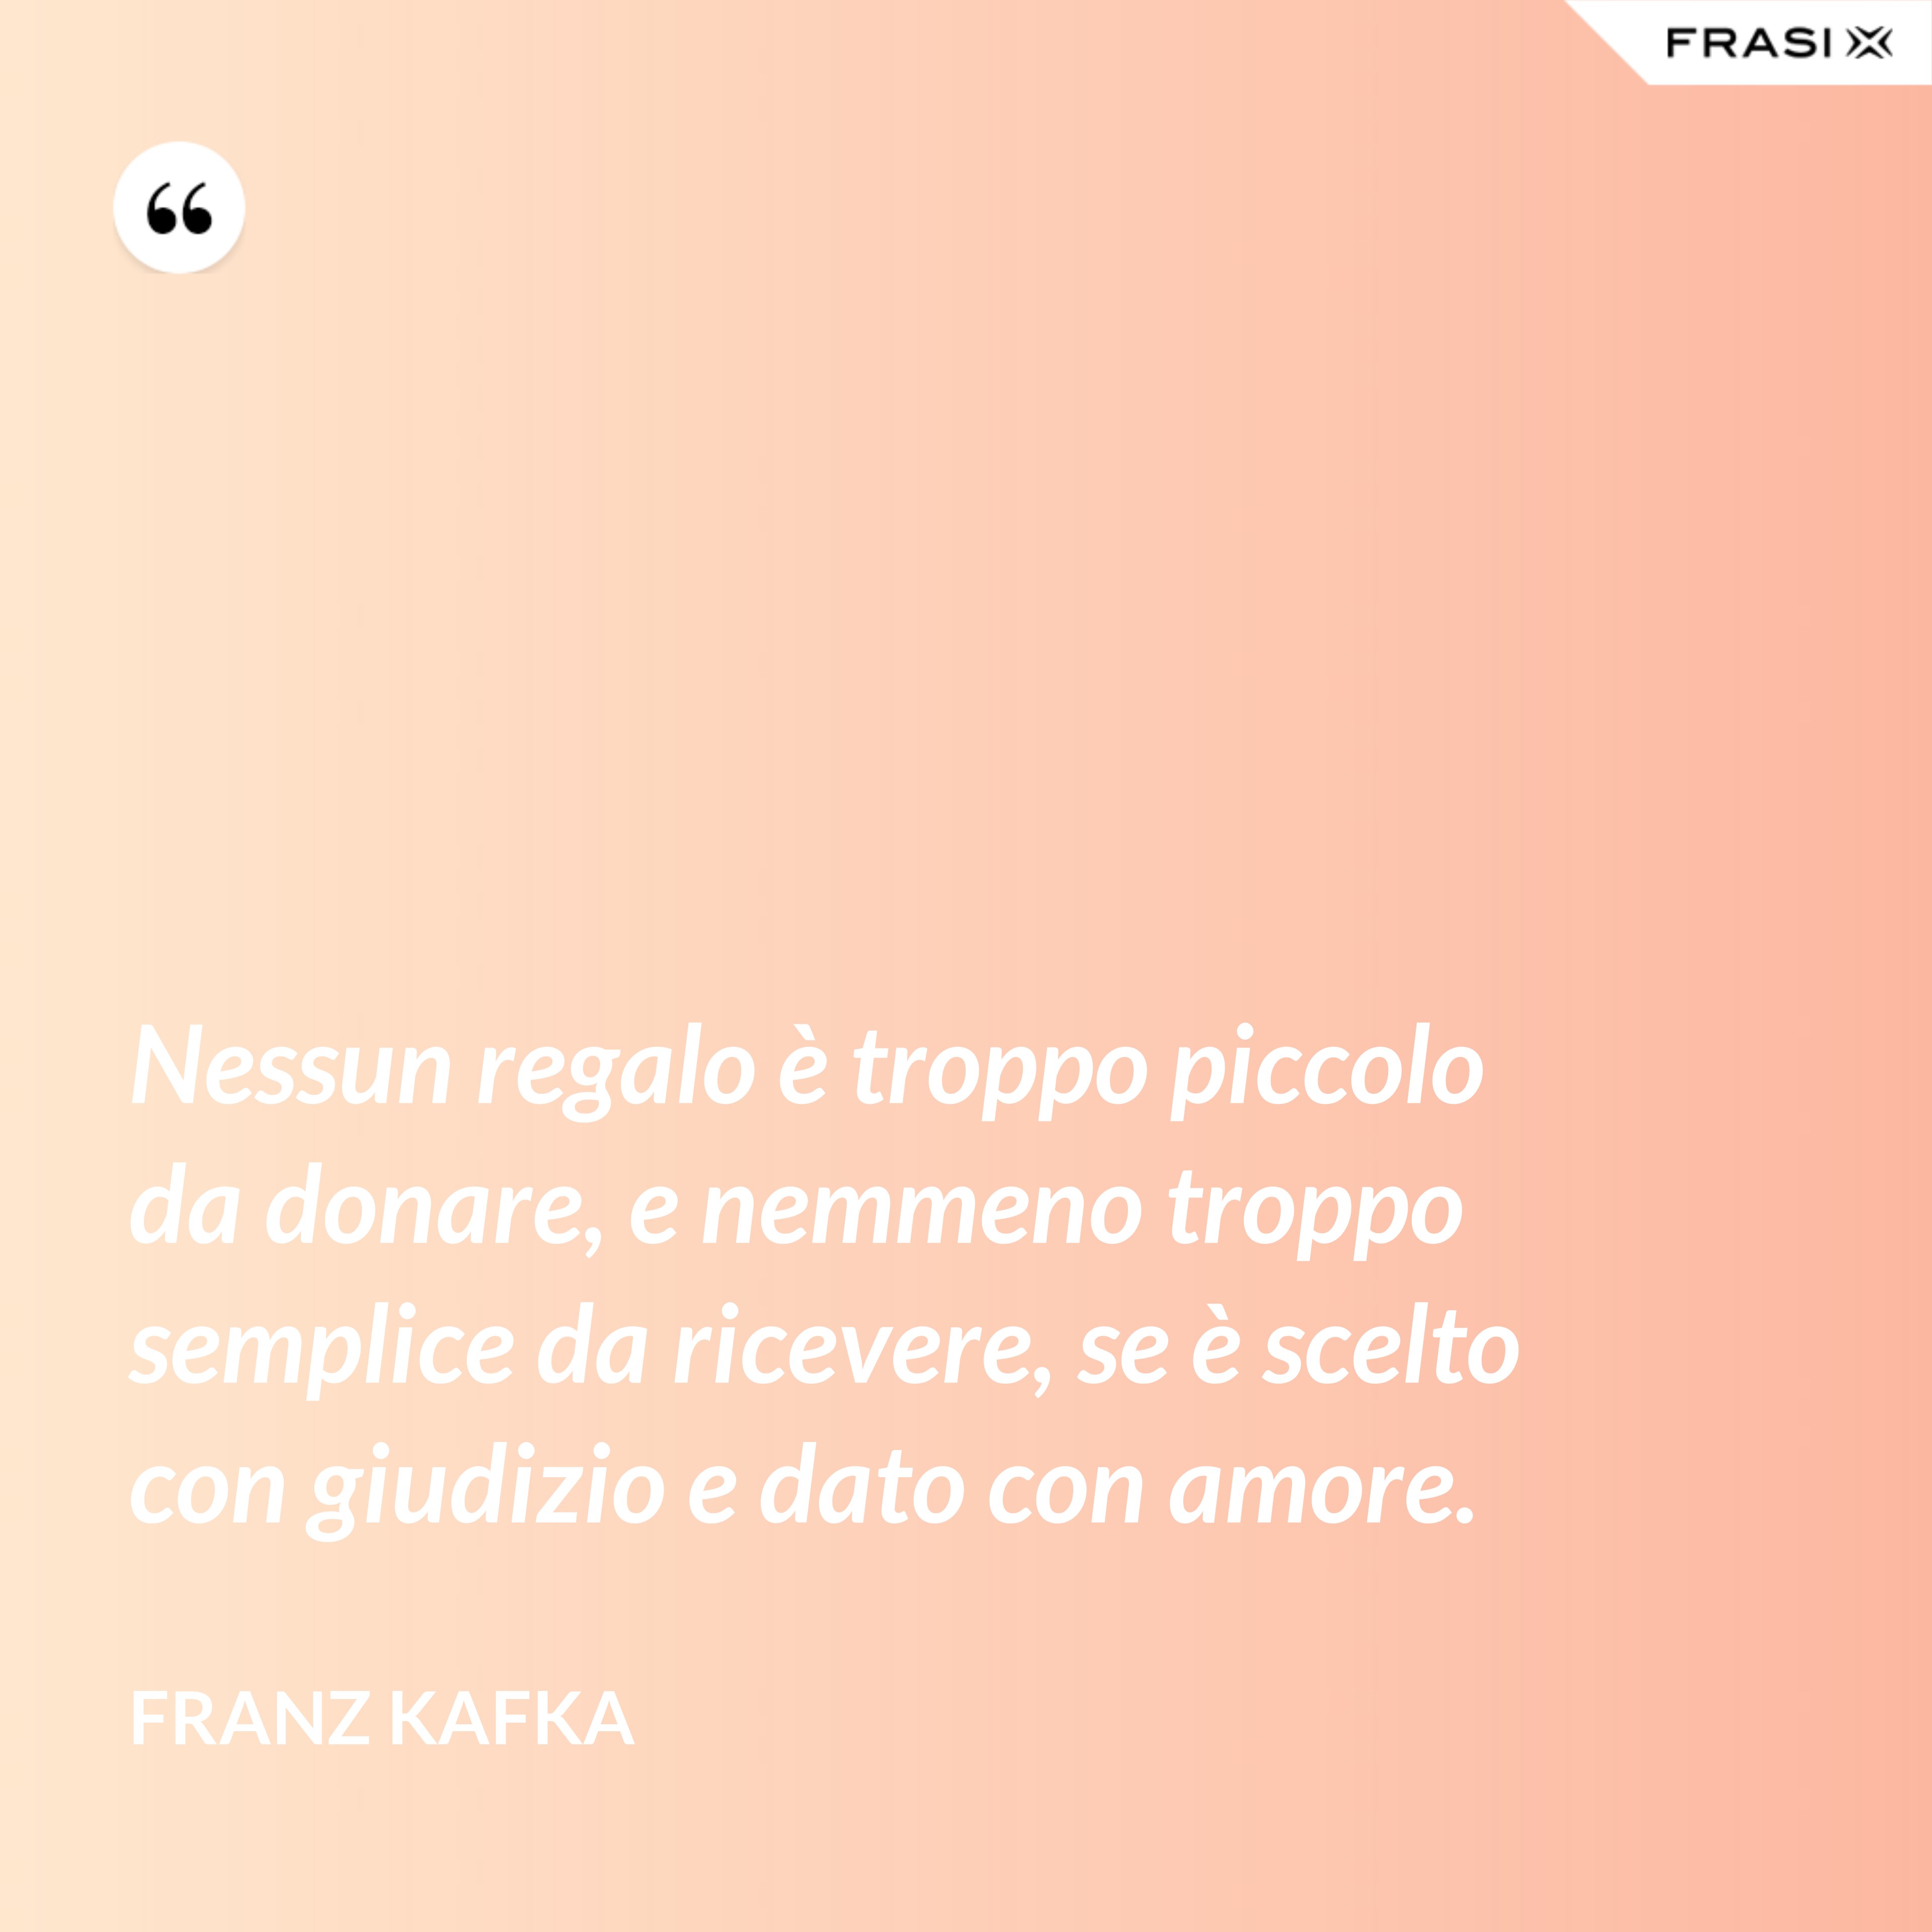 Nessun regalo è troppo piccolo da donare, e nemmeno troppo semplice da ricevere, se è scelto con giudizio e dato con amore. - Franz Kafka